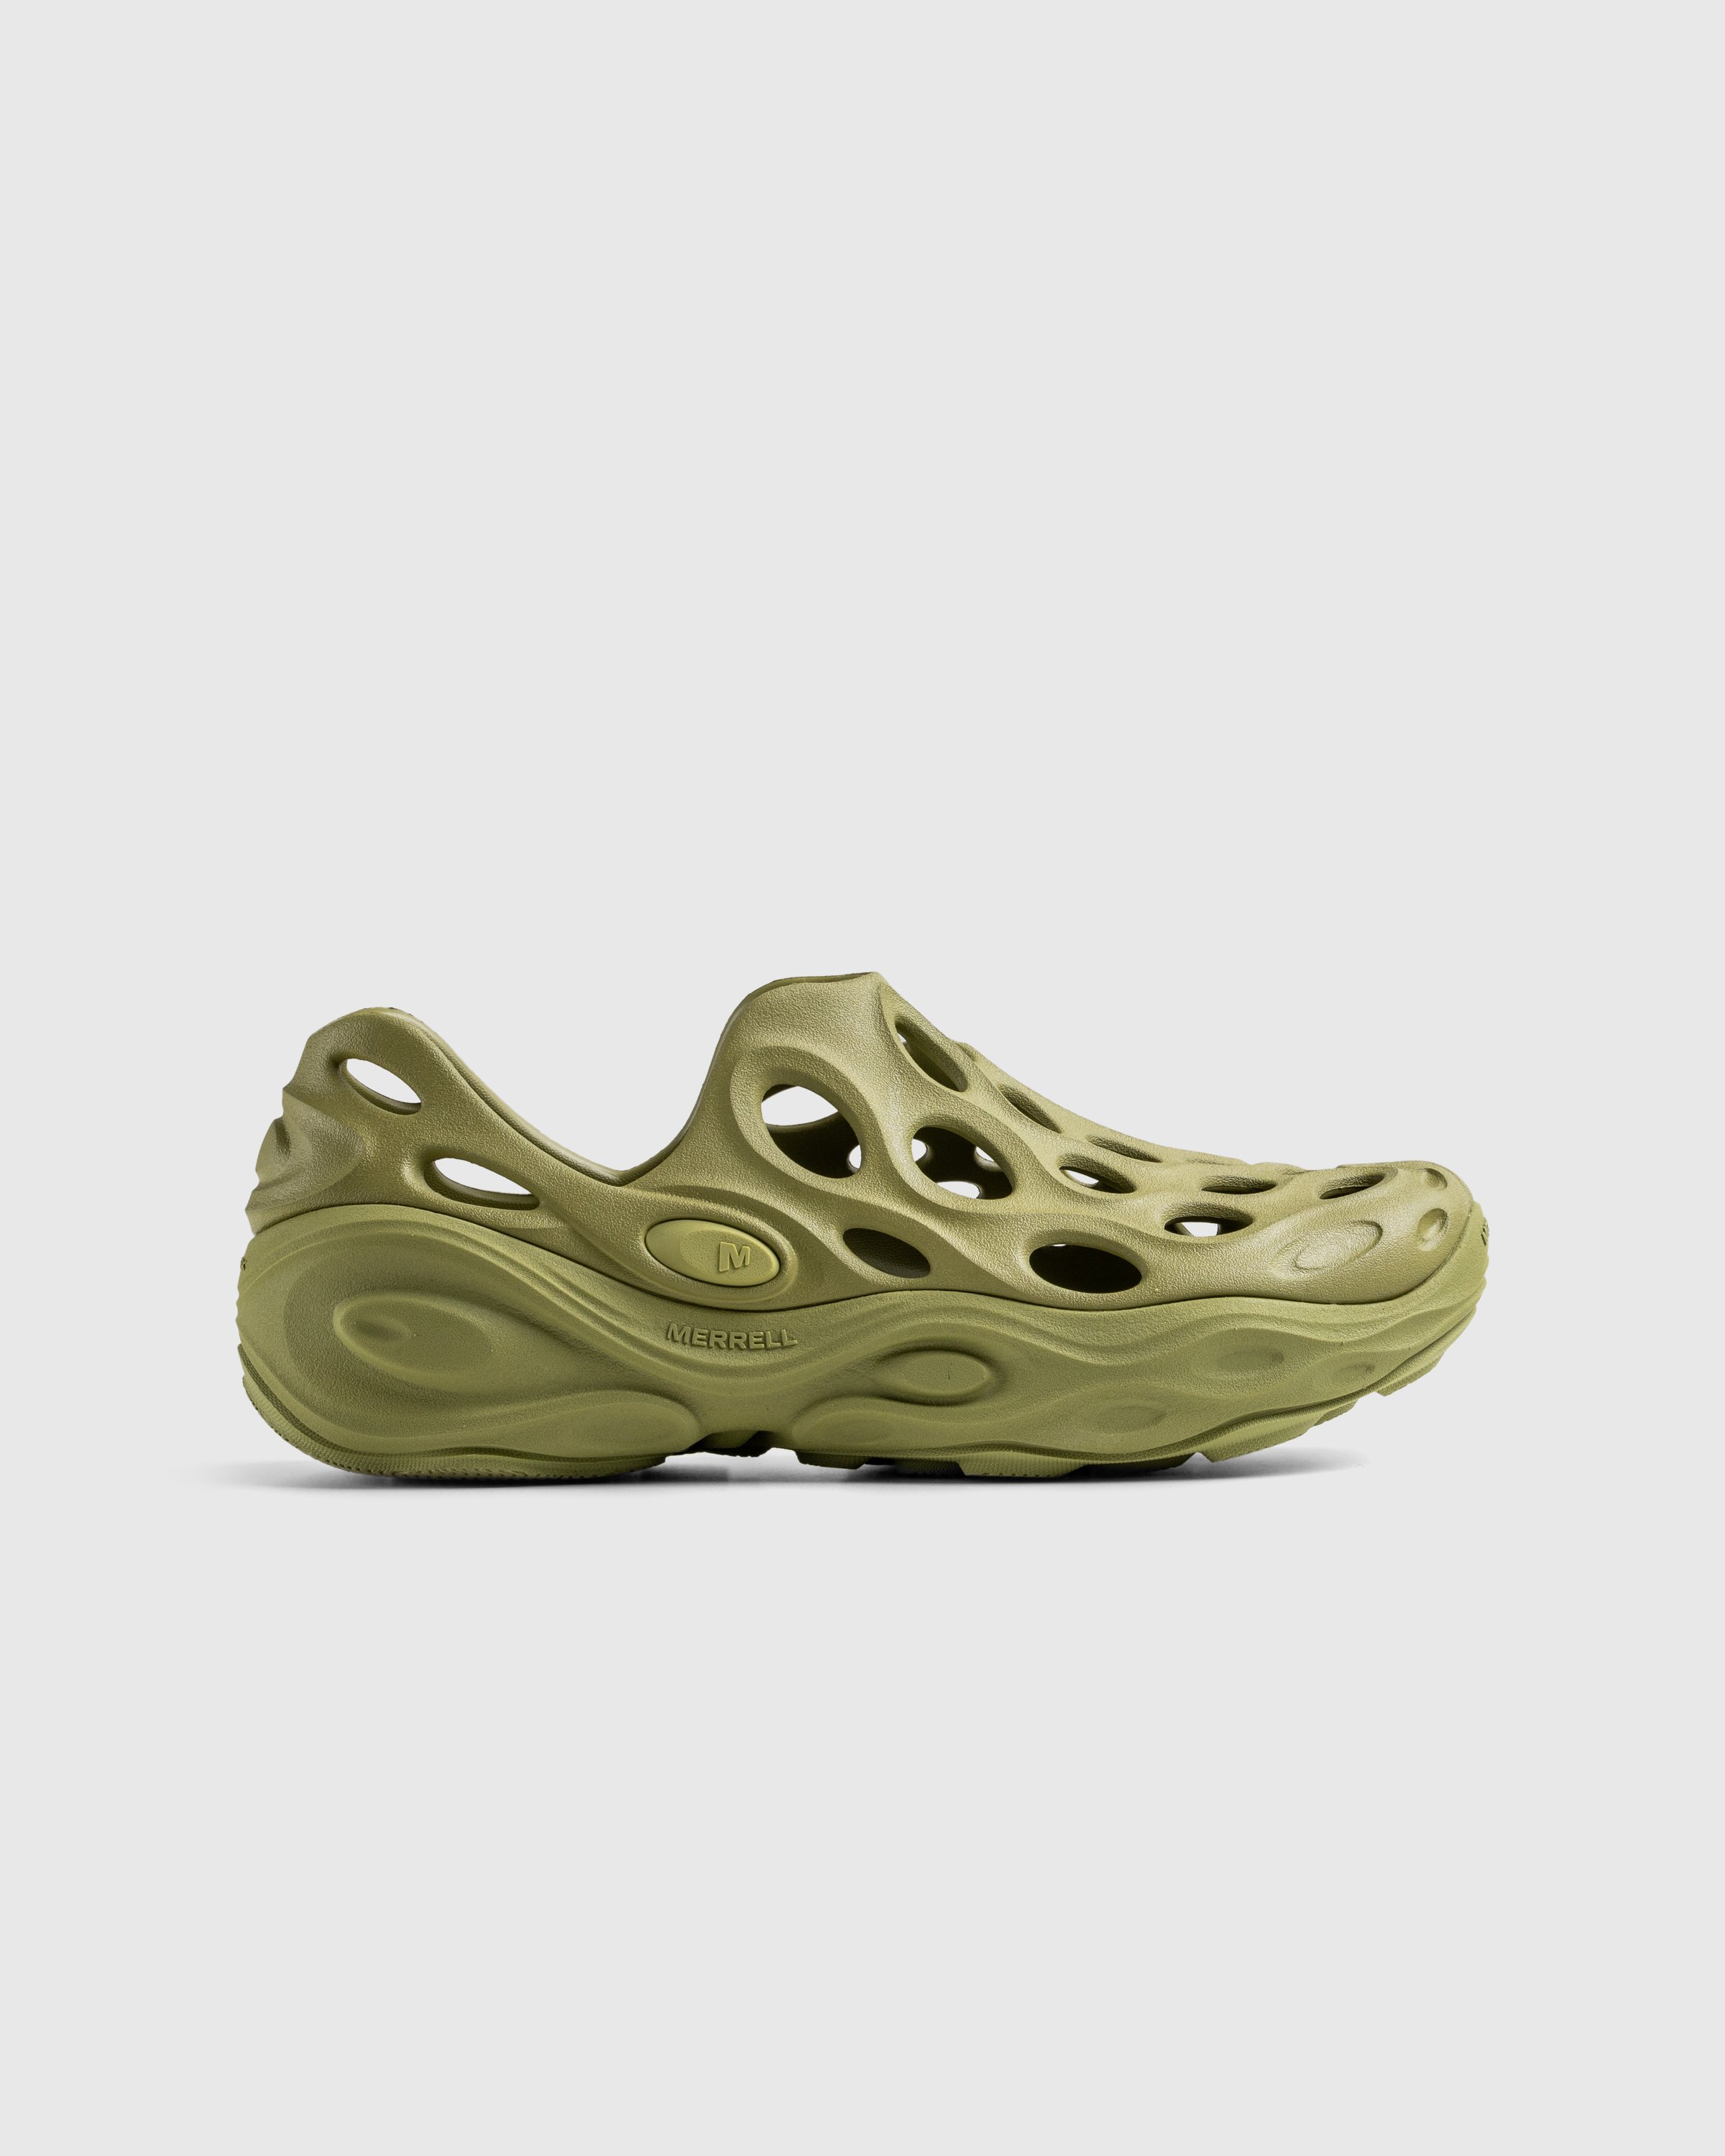 Merrell - HYDRO NEXT GEN MOC SE/TRIPLE MOSSTONE - Footwear - Green - Image 1